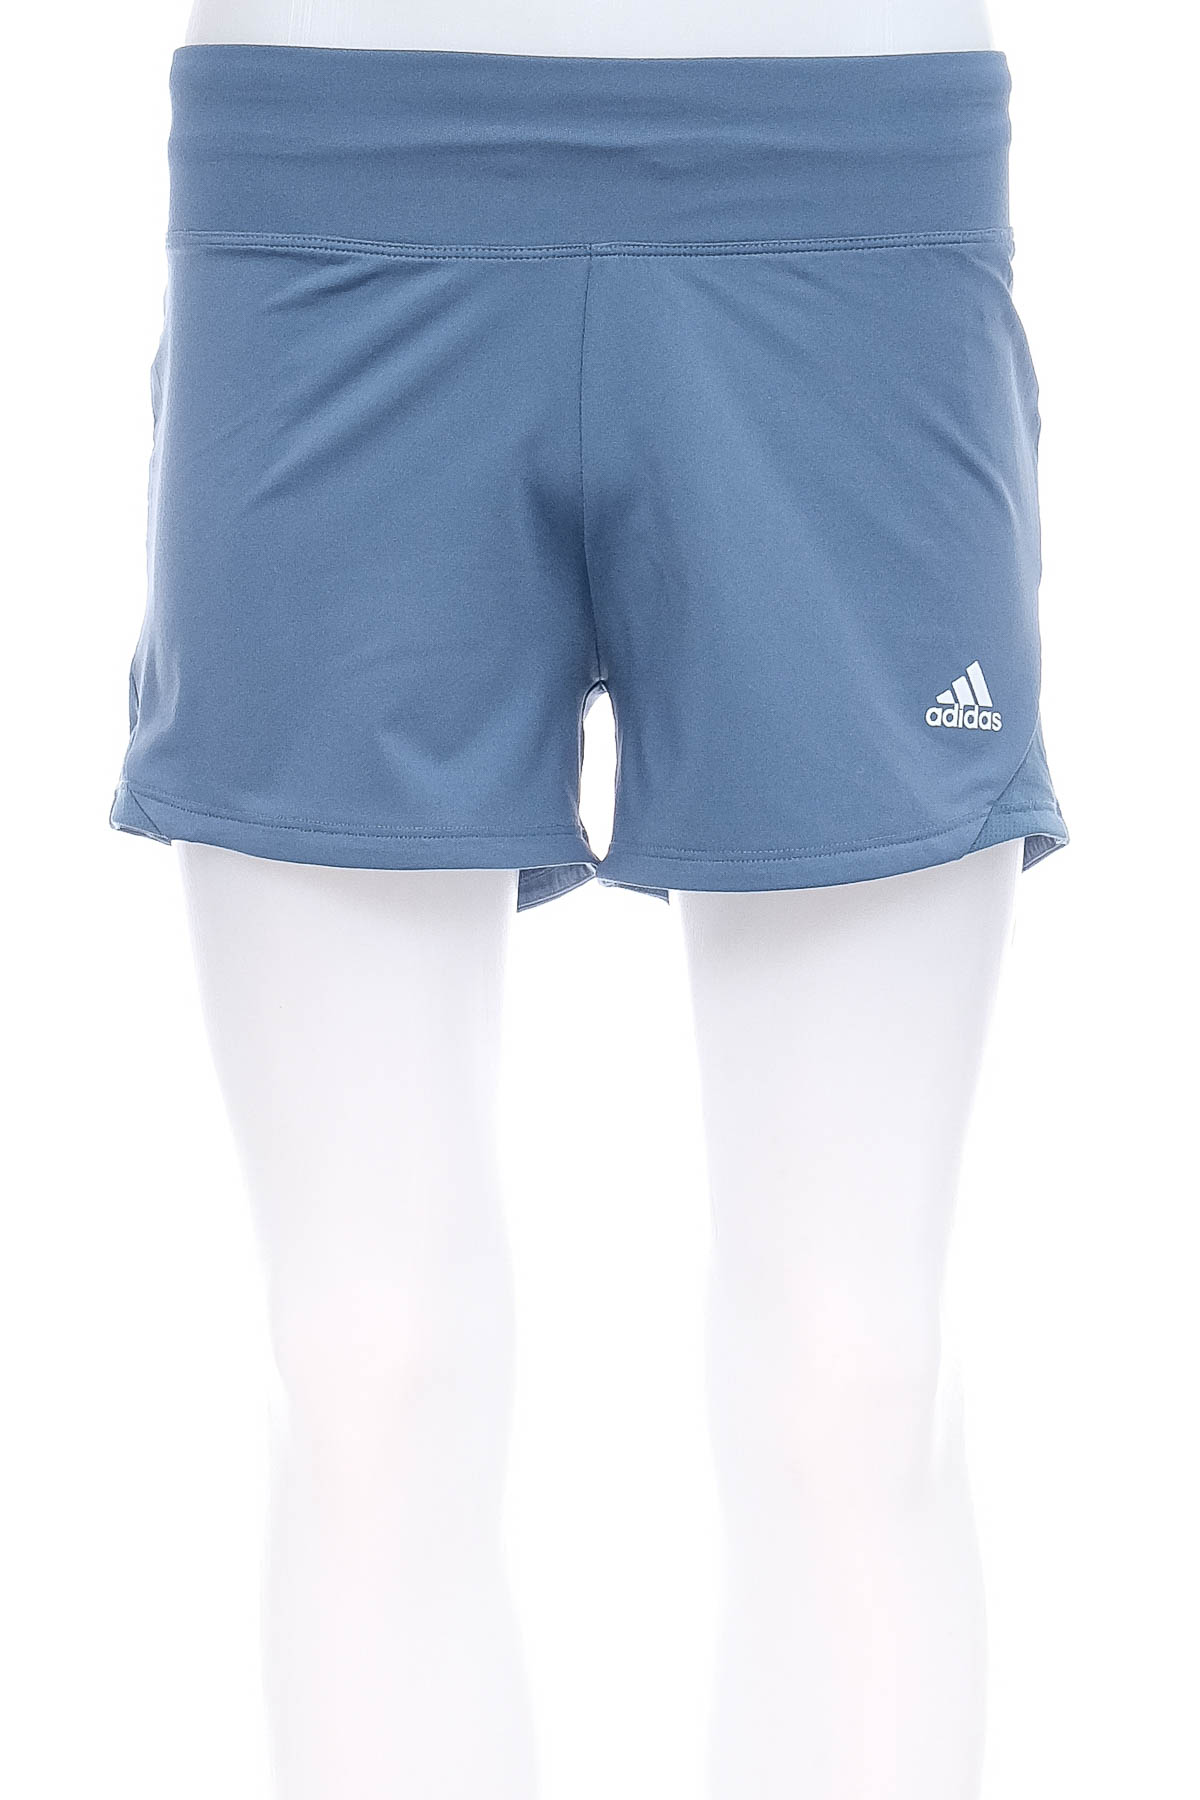 Female shorts - Adidas - 0